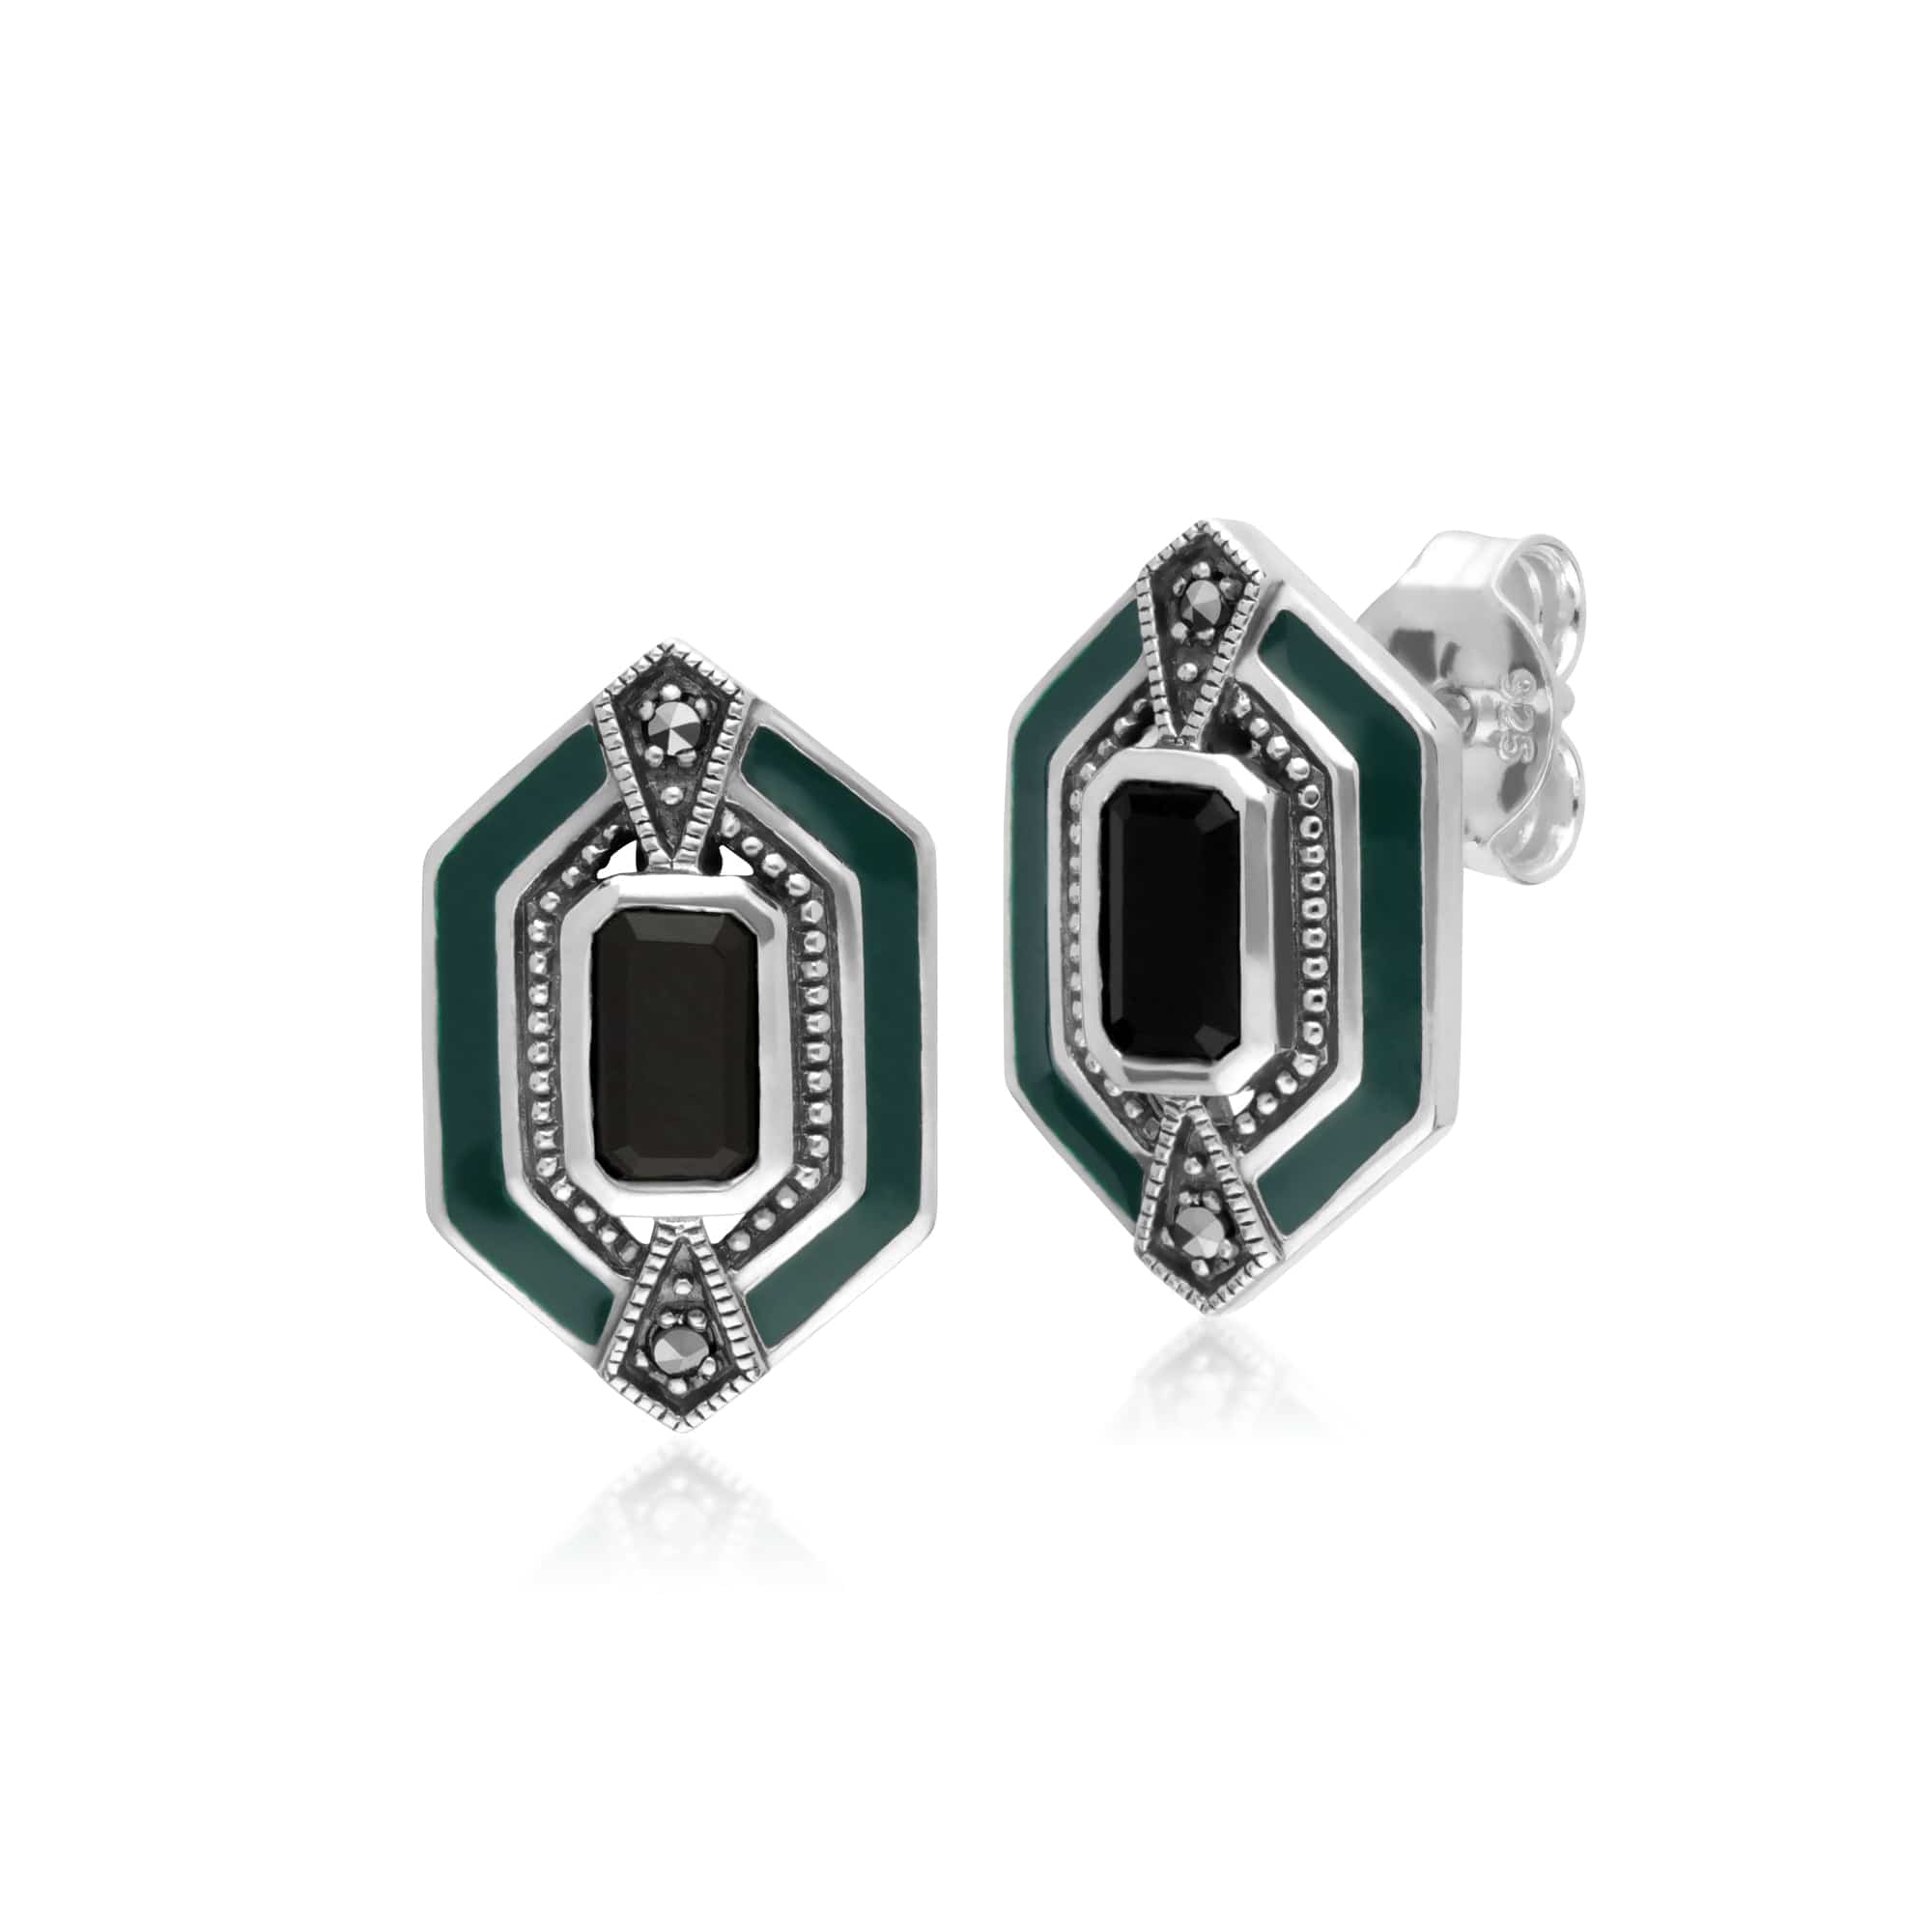 214E868104925-214P303401925 Art Deco Style Black Onyx, Marcasite & Green Enamel Hexagon Stud Earrings & Pendant Set in 925 Sterling Silver 2